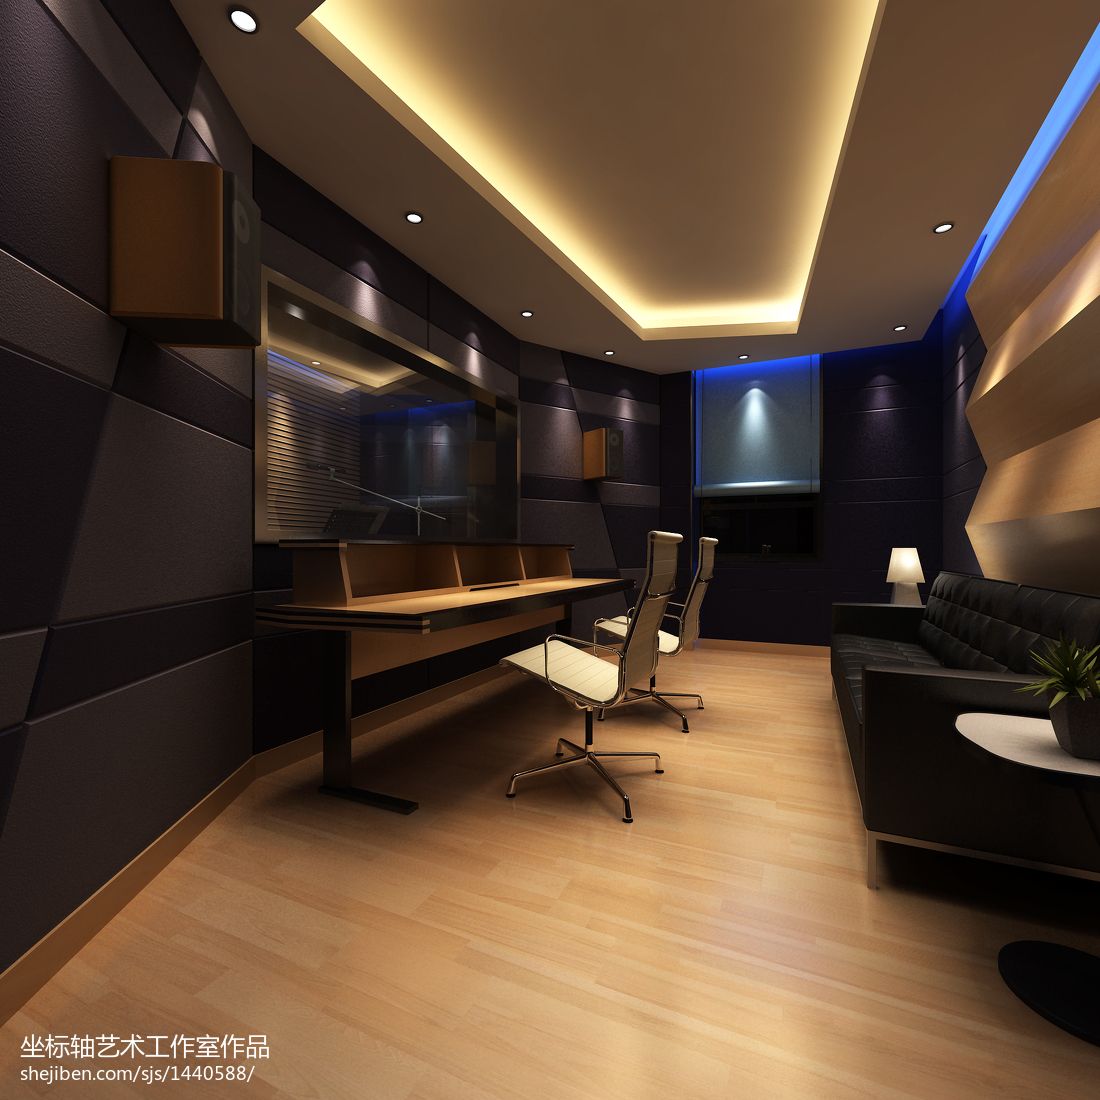 国内最顶级的录音棚studio imagine入住北京电影学院文创园